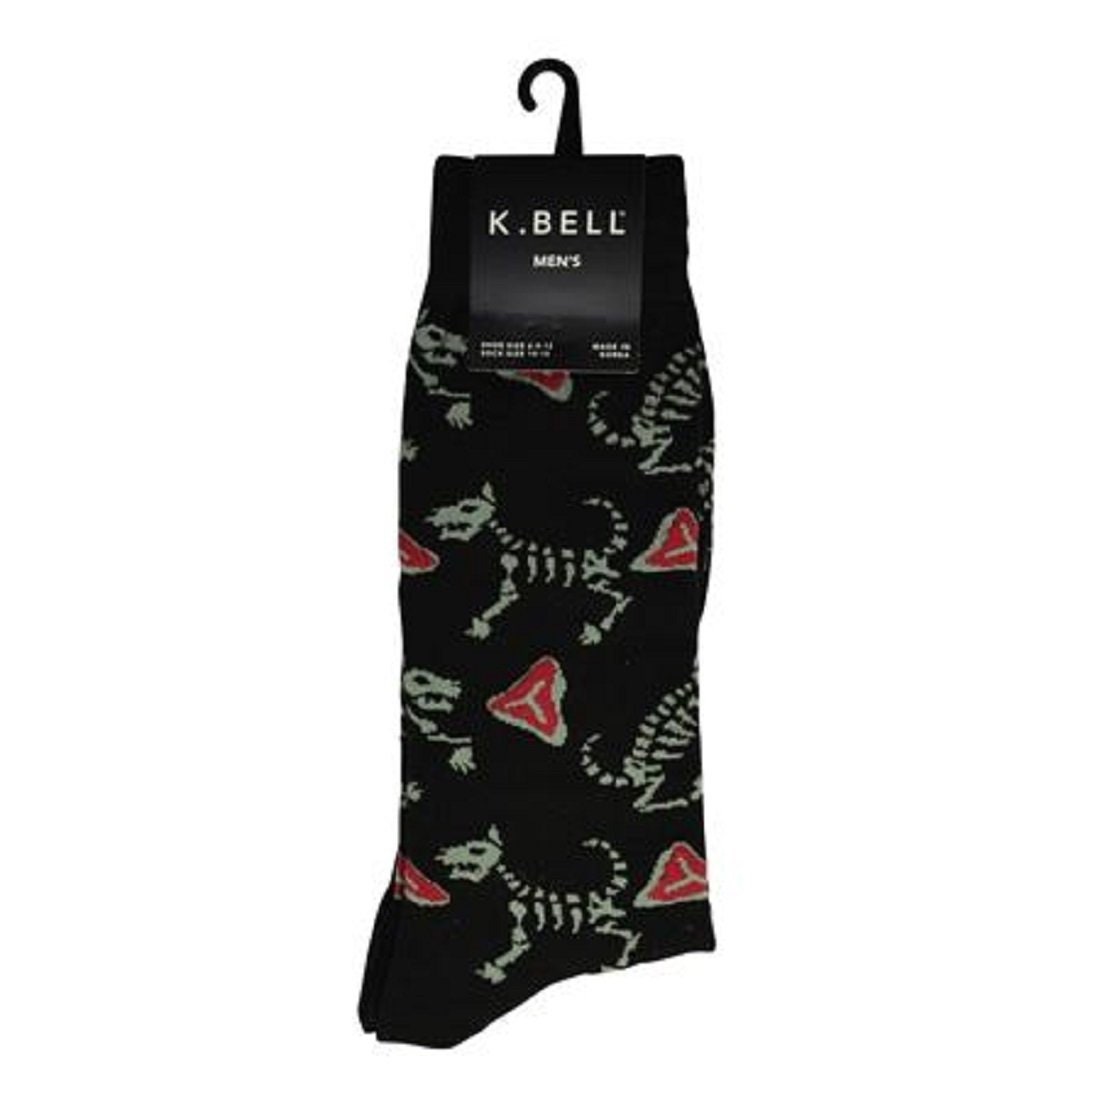 K. Bell Men's T-dog Crew Socks One Size Black 